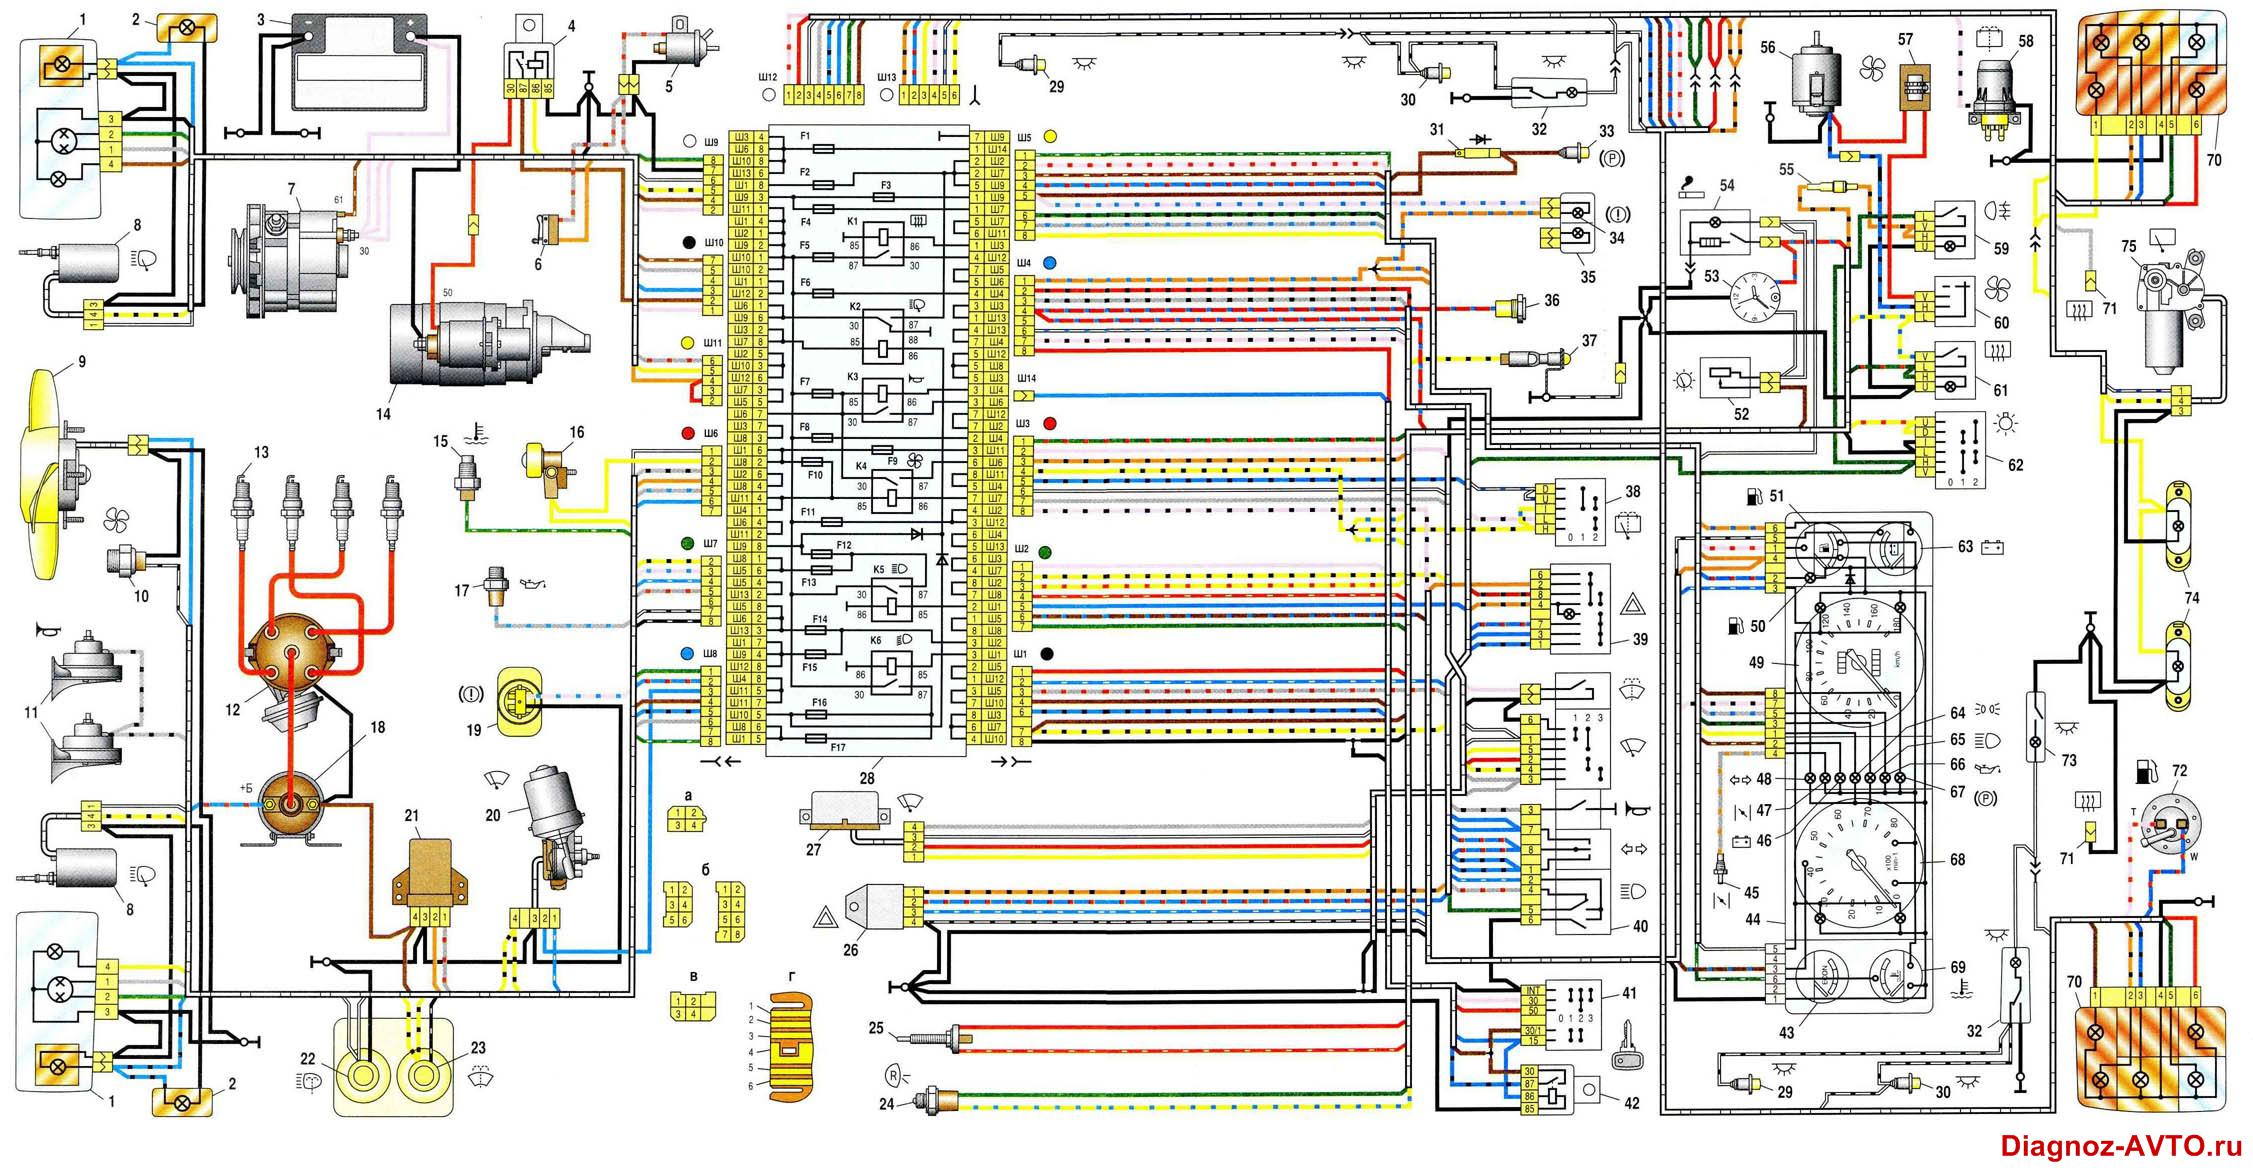 Общая схема электрооборудования ВАЗ-21047